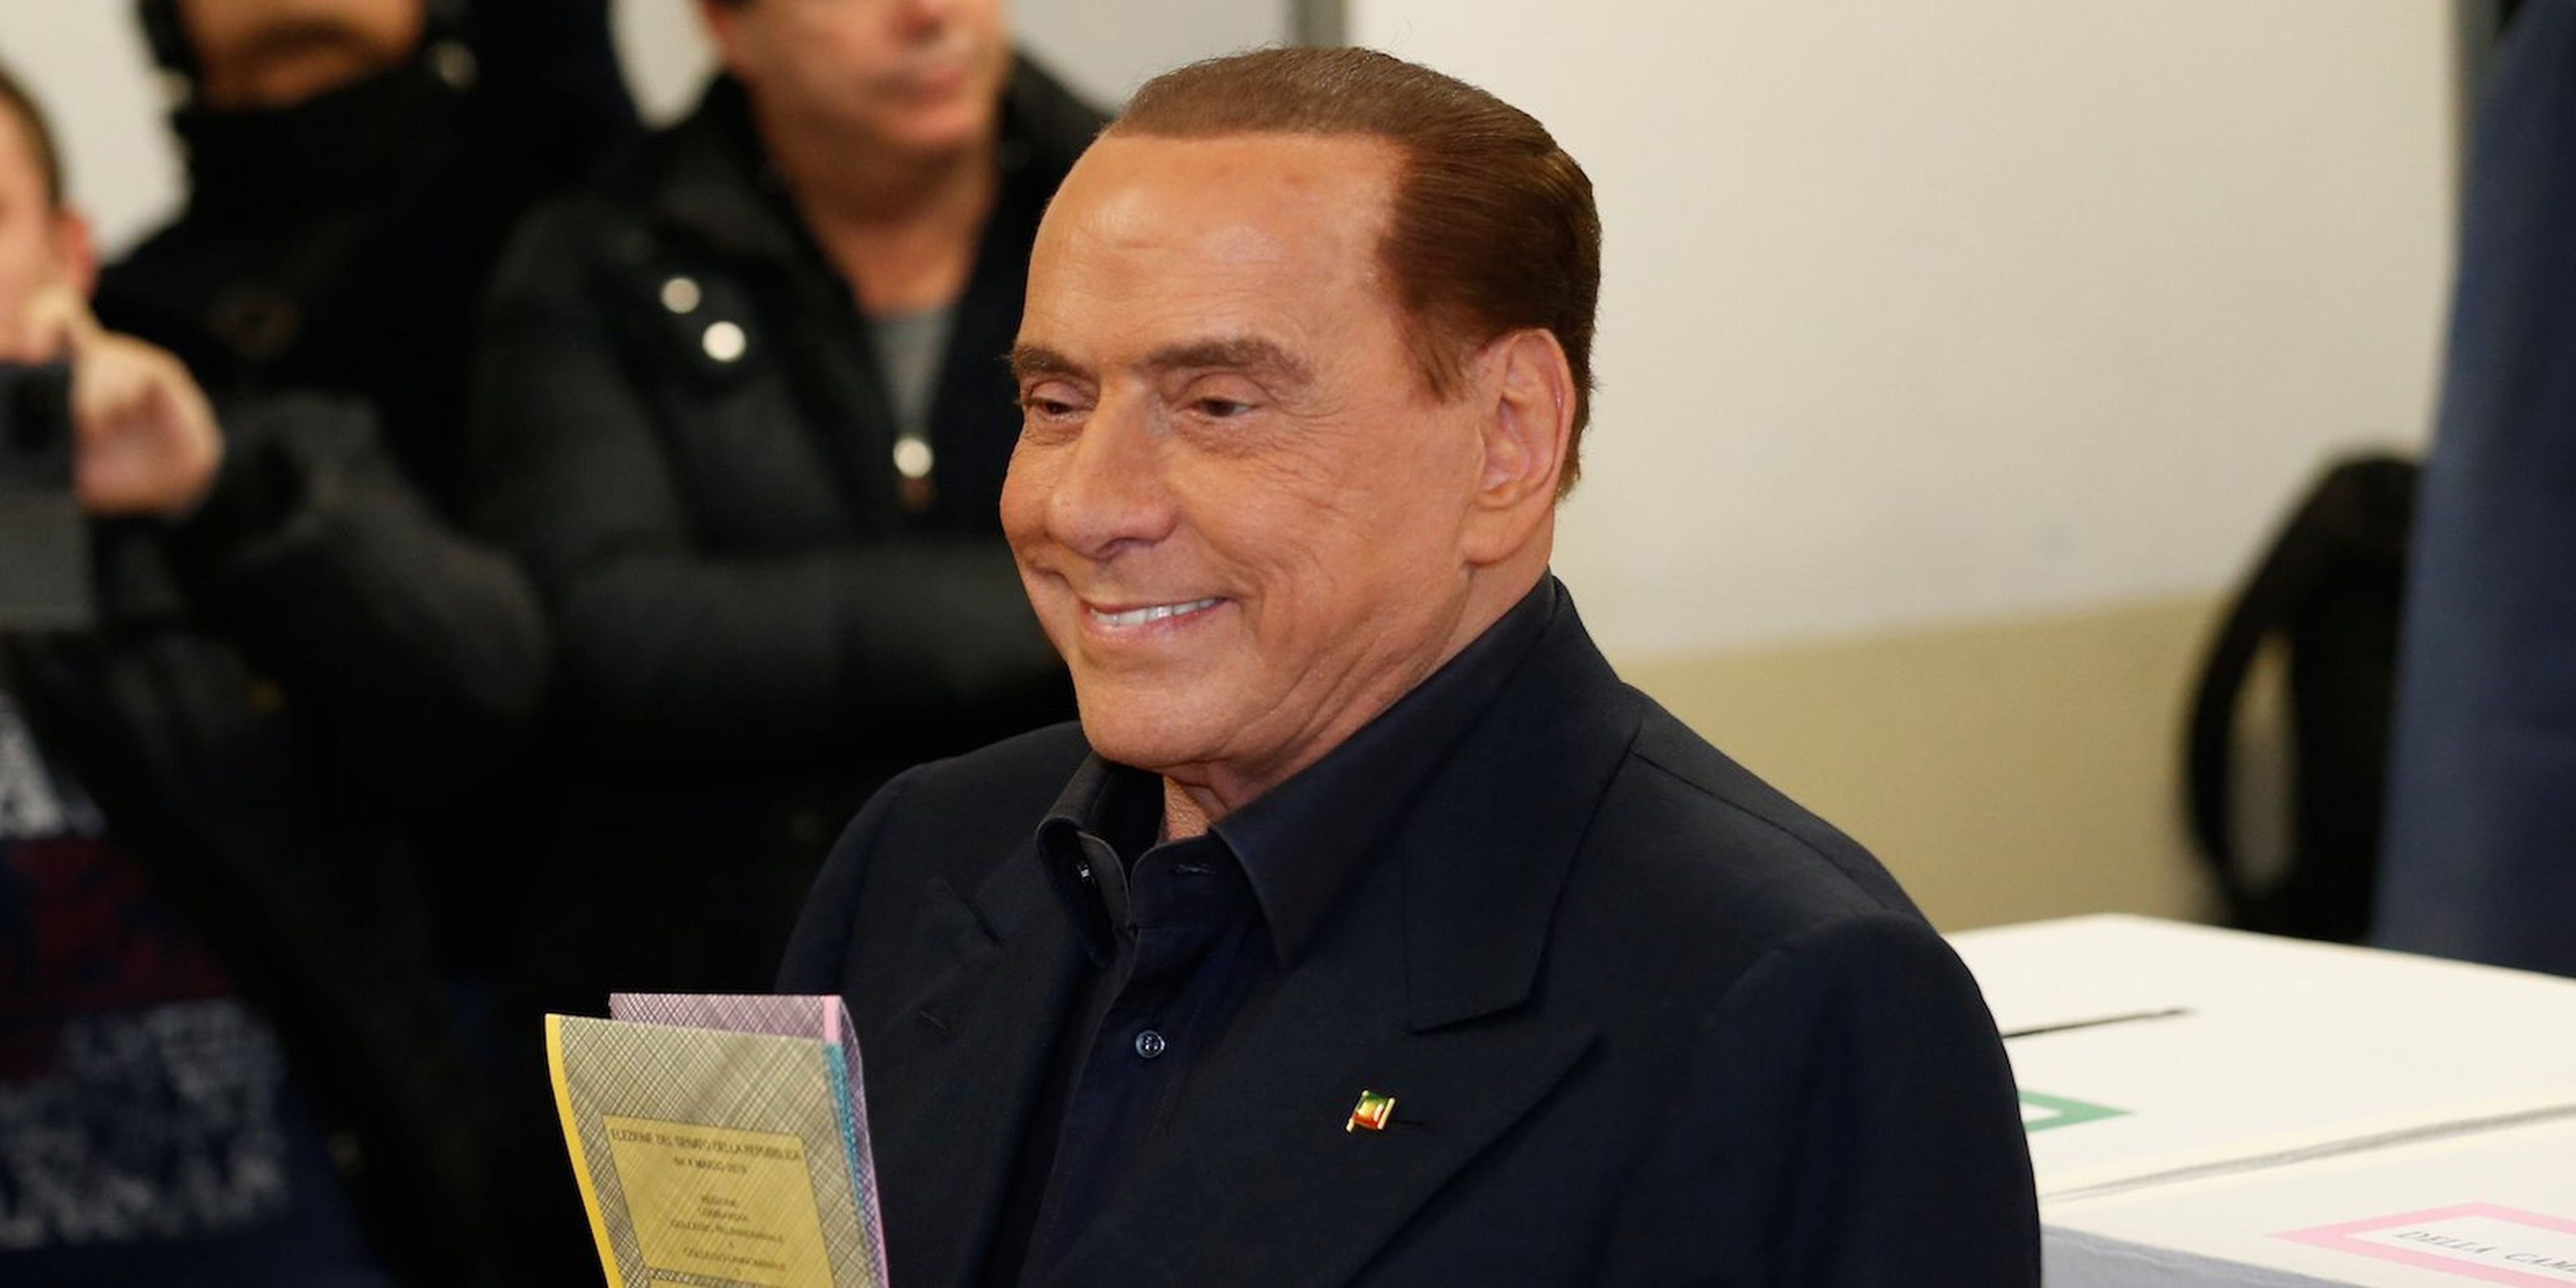 El líder del partido Forza Italia, Silvio Berlusconi, deja su voto en una mesa electoral en Milán, Italia, el 4 de marzo de 2018.